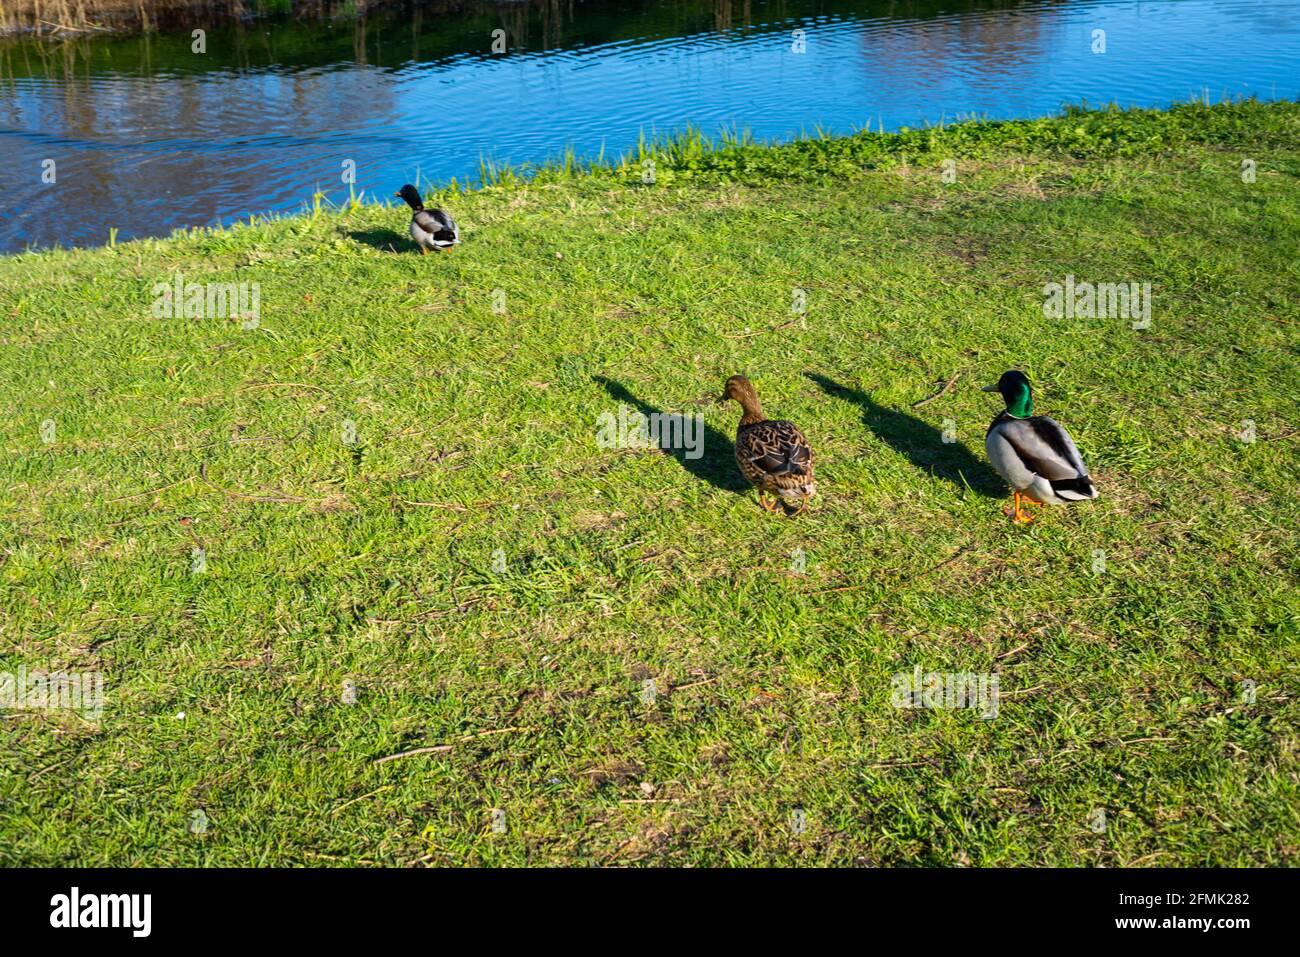 Enten gehen in den Teich, um im grünen Gras in der warmen Frühlingssonne zu schwimmen. Starke schwarze Schatten fallen von den Enten. Stockfoto